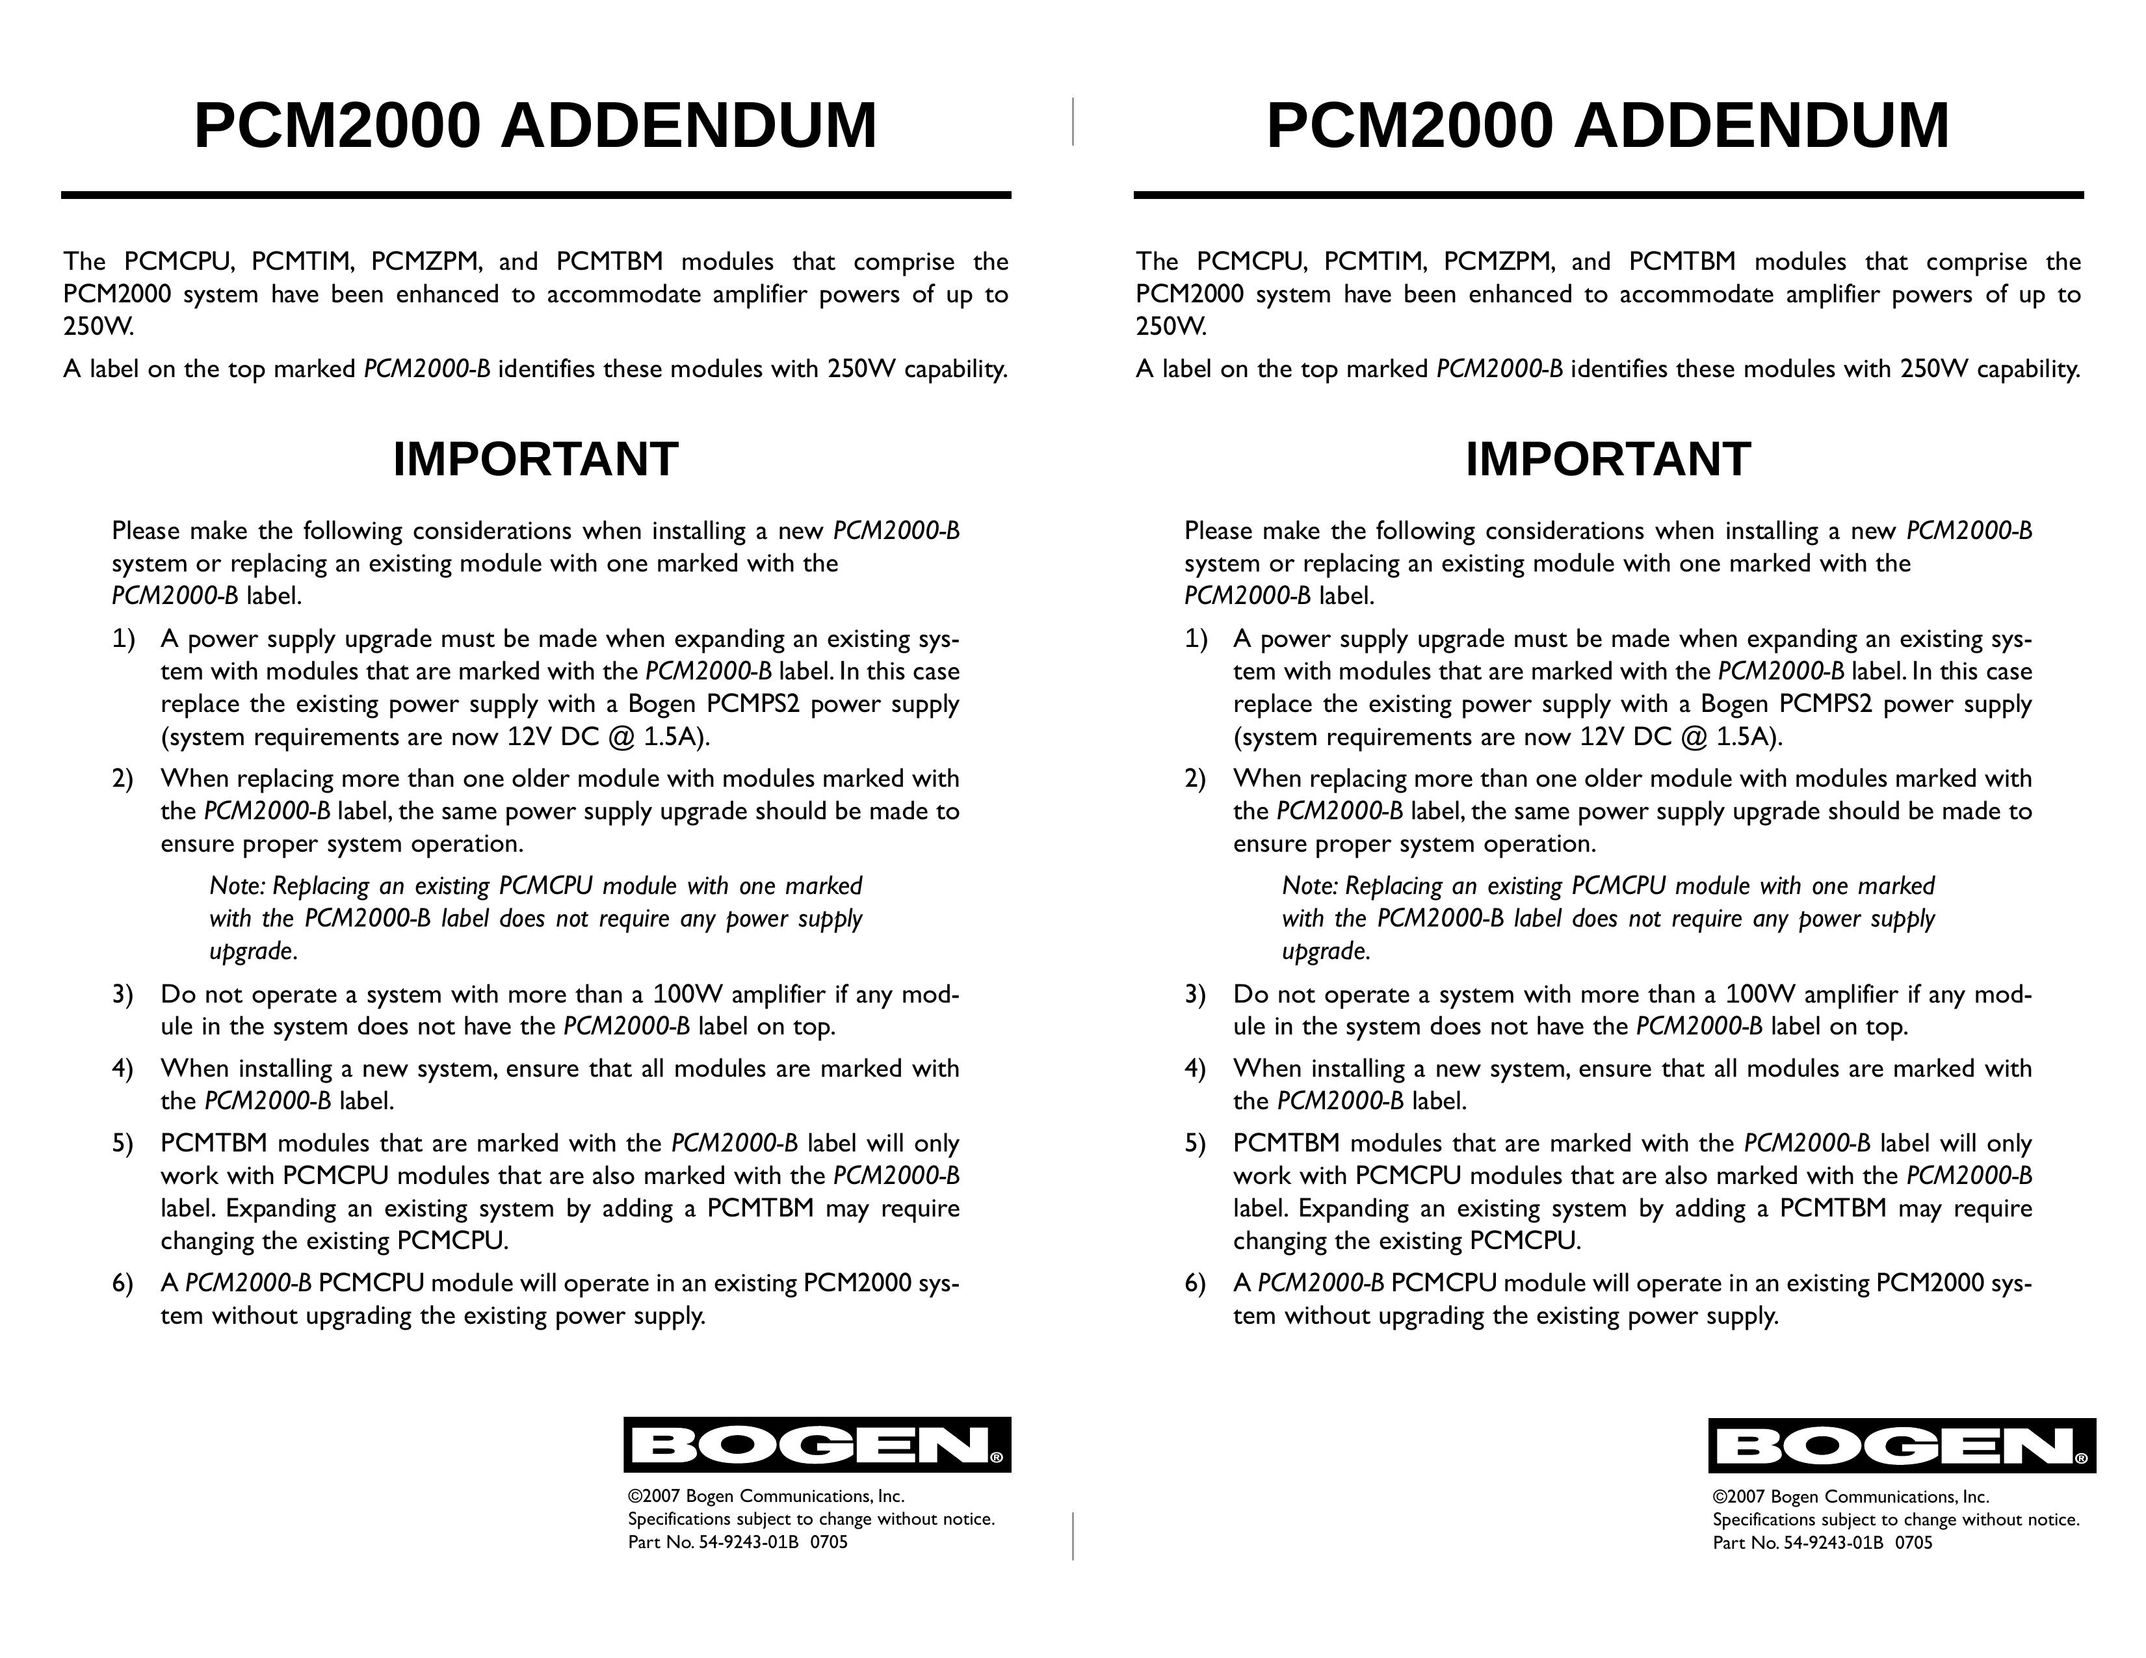 Bogen PCM2000 Pager User Manual